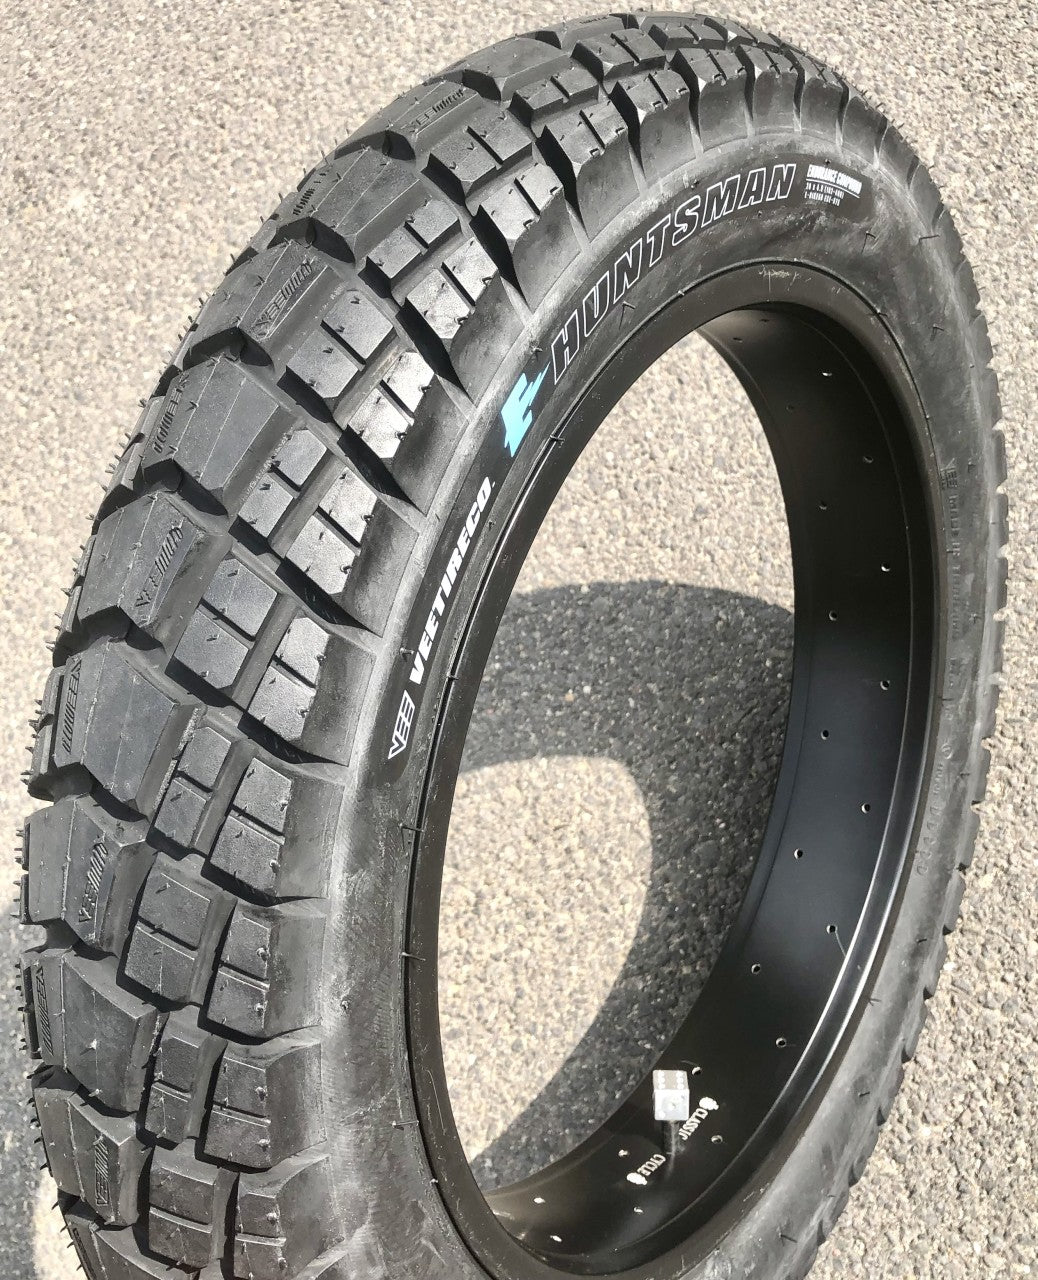 204 E-Huntsman Fatbike Tire 20 x 4.0 inch pure black